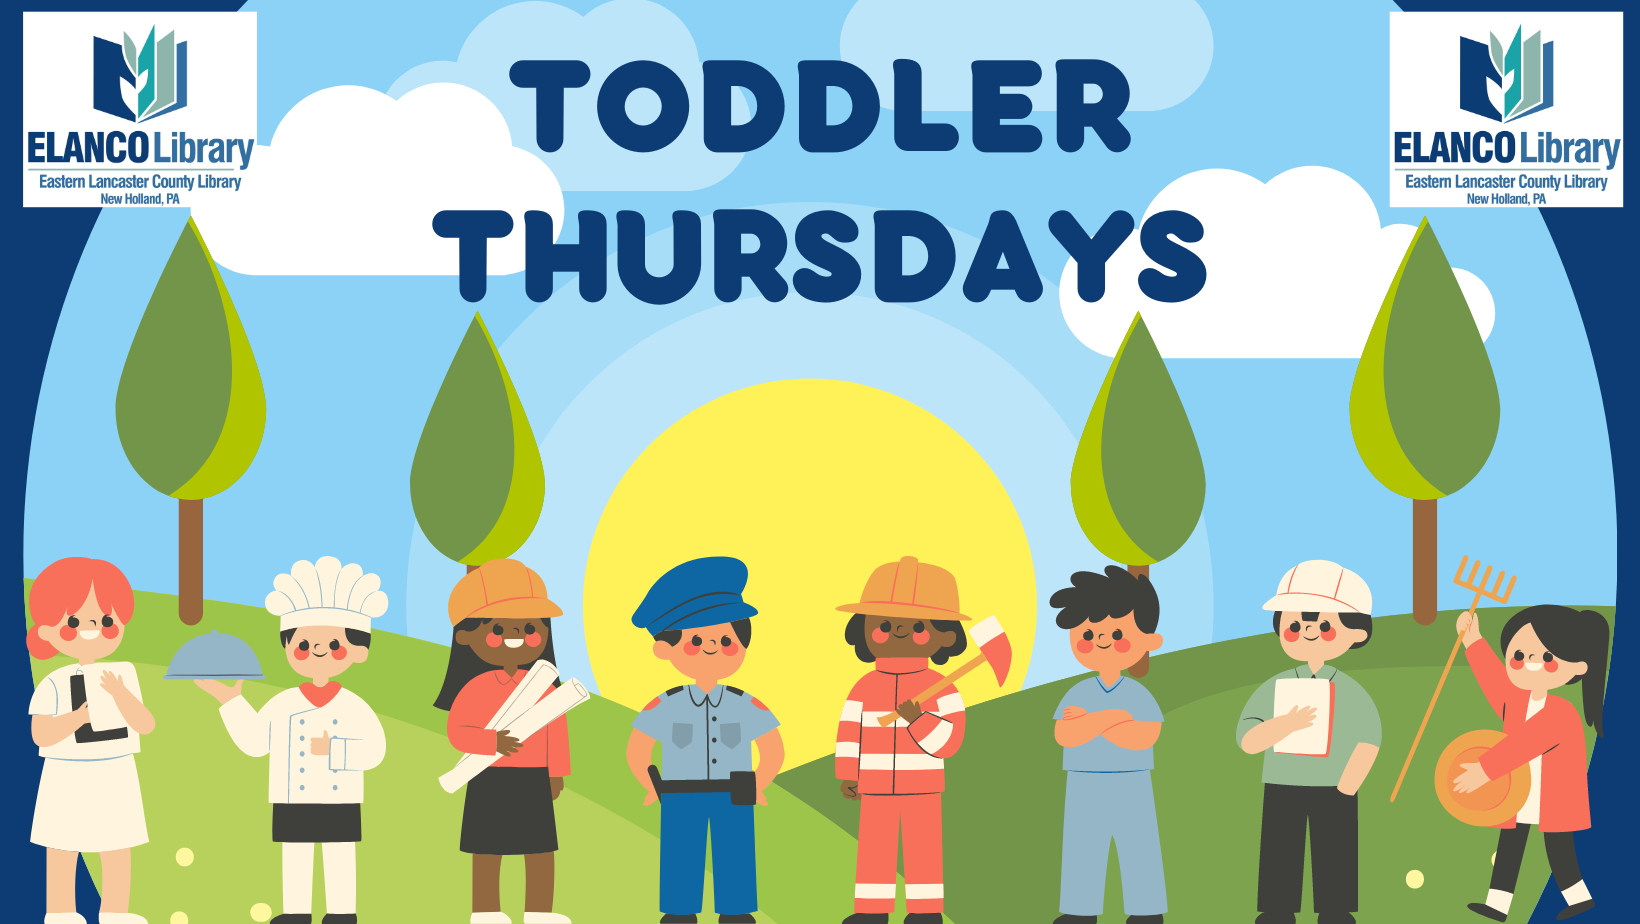 Toddler Thursdays